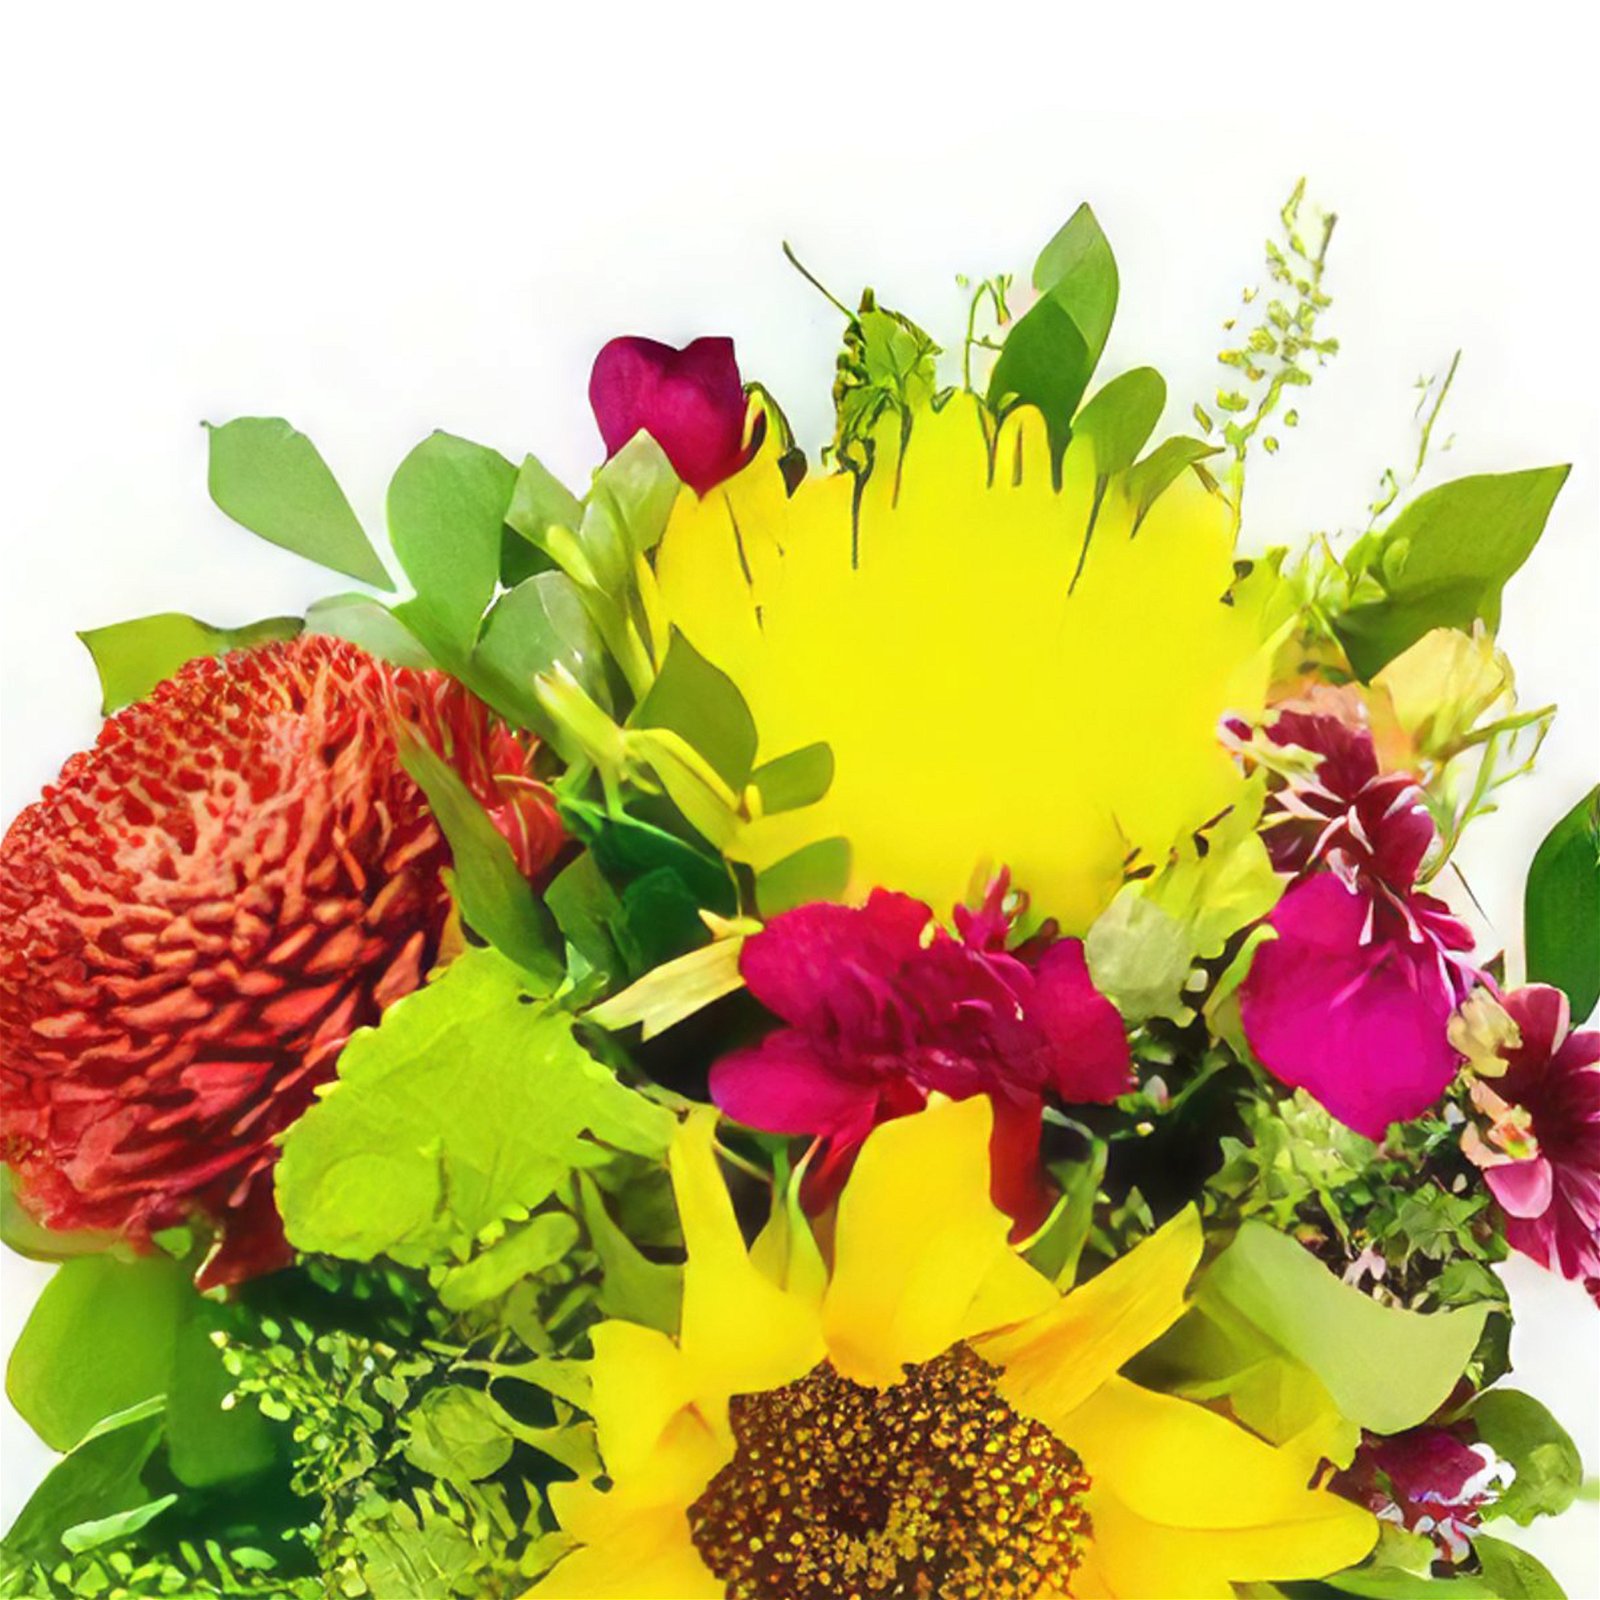 La Campana Blumen Florist- Frühlingsliebe Bouquet/Blumenschmuck